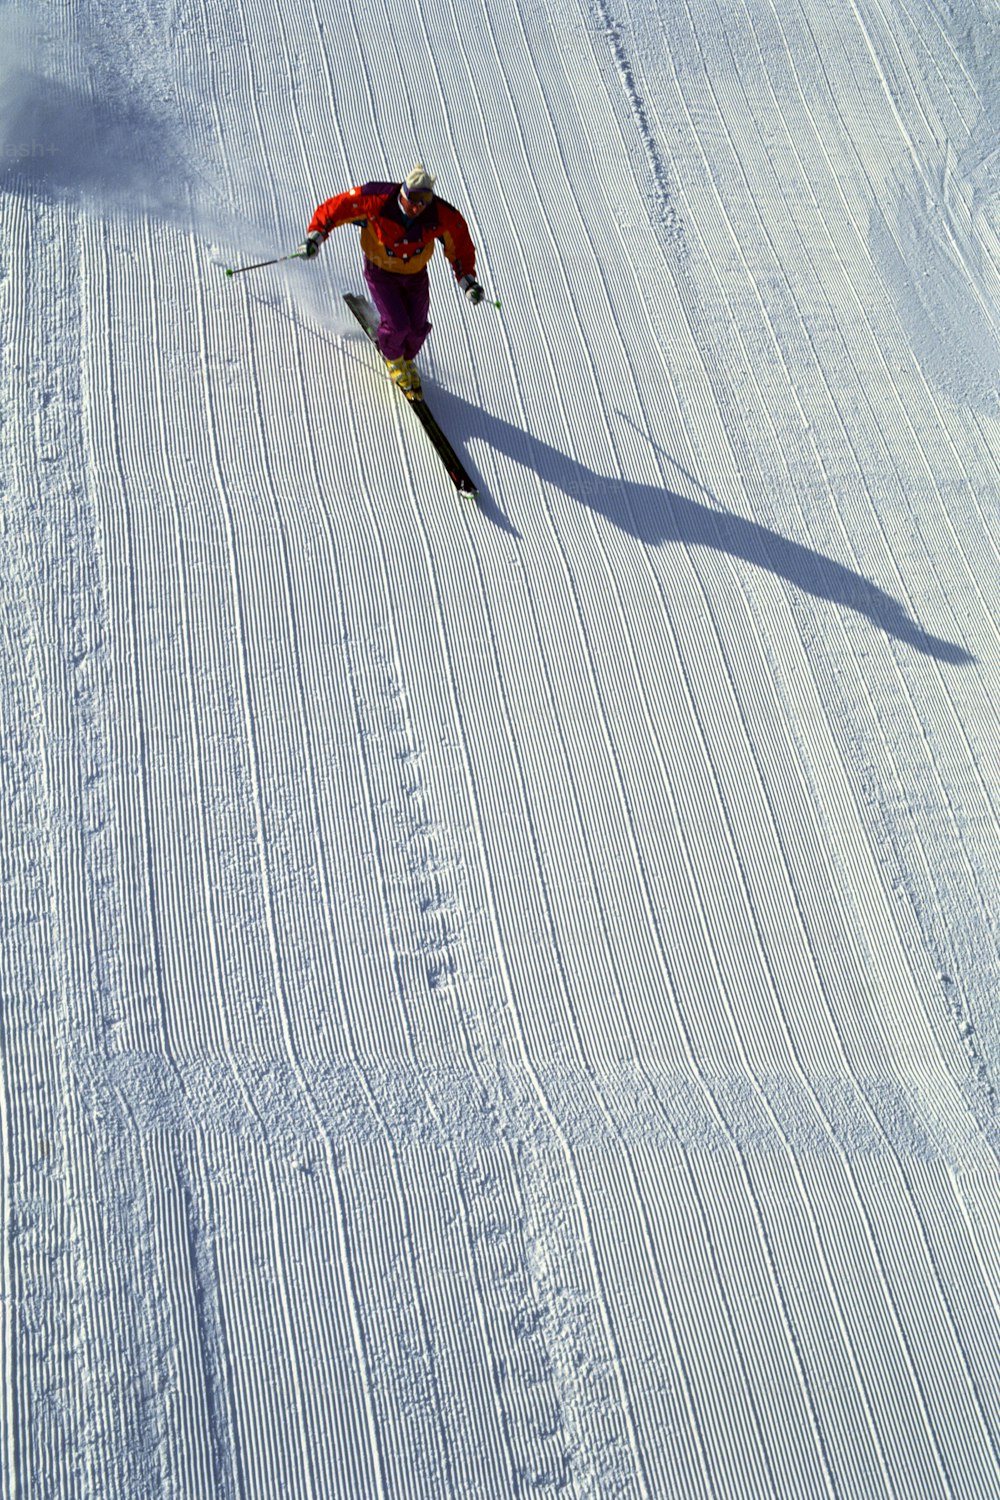 雪に覆われた斜面をスキーで下る人